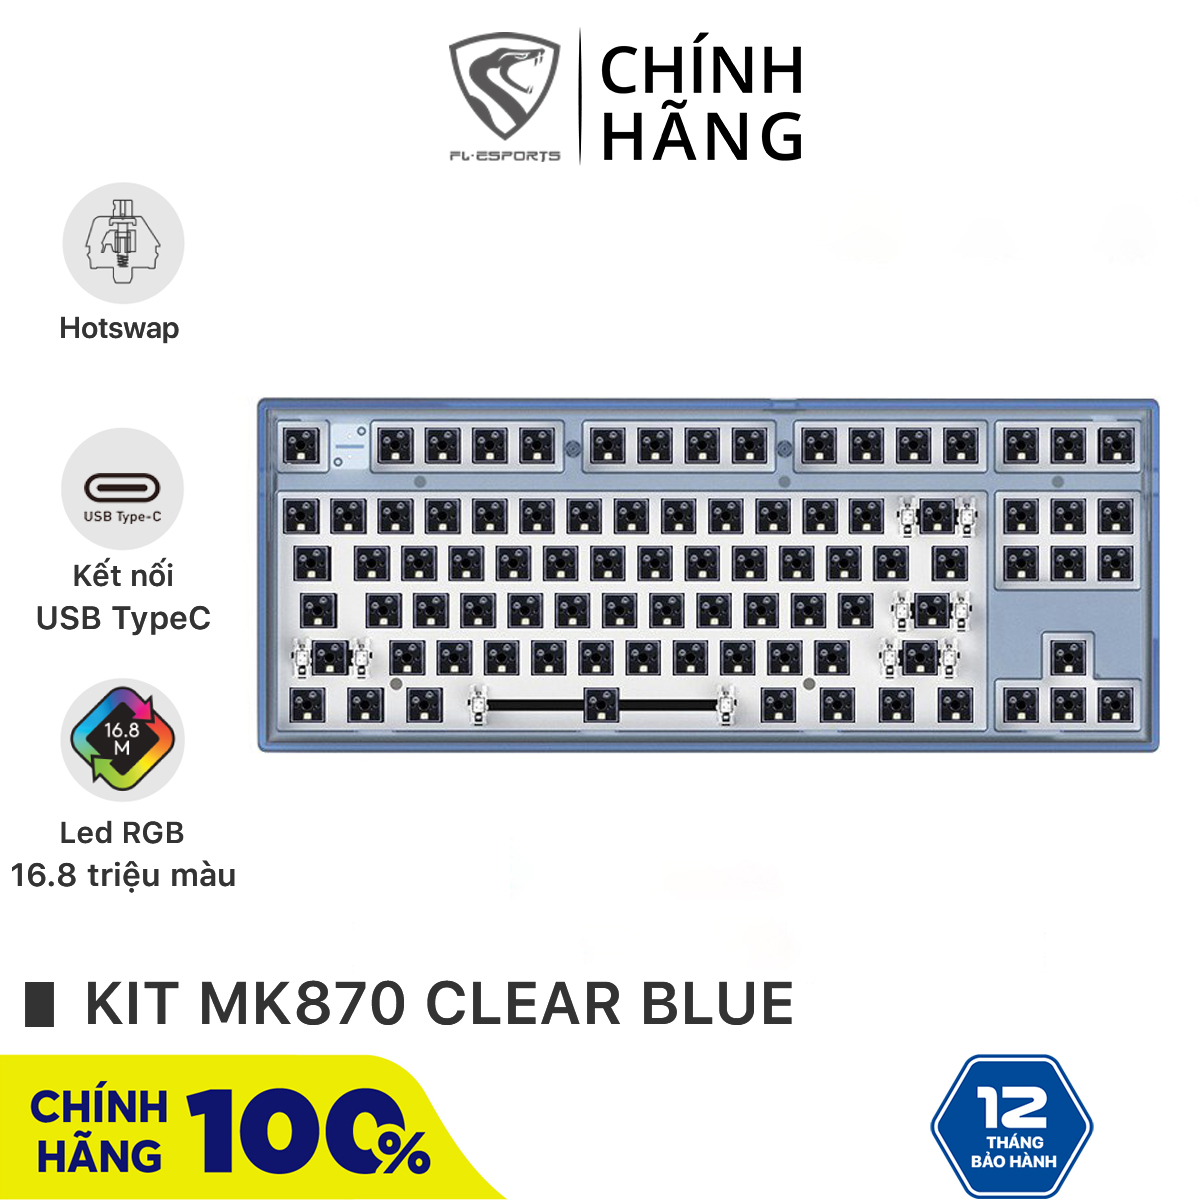 Bộ kit bàn phím cơ FL-Esports MK870 1 Mode Clear Blue - Hotswap - Led RGB - Sẵn foam - Bảo hành 12 tháng thumbnail